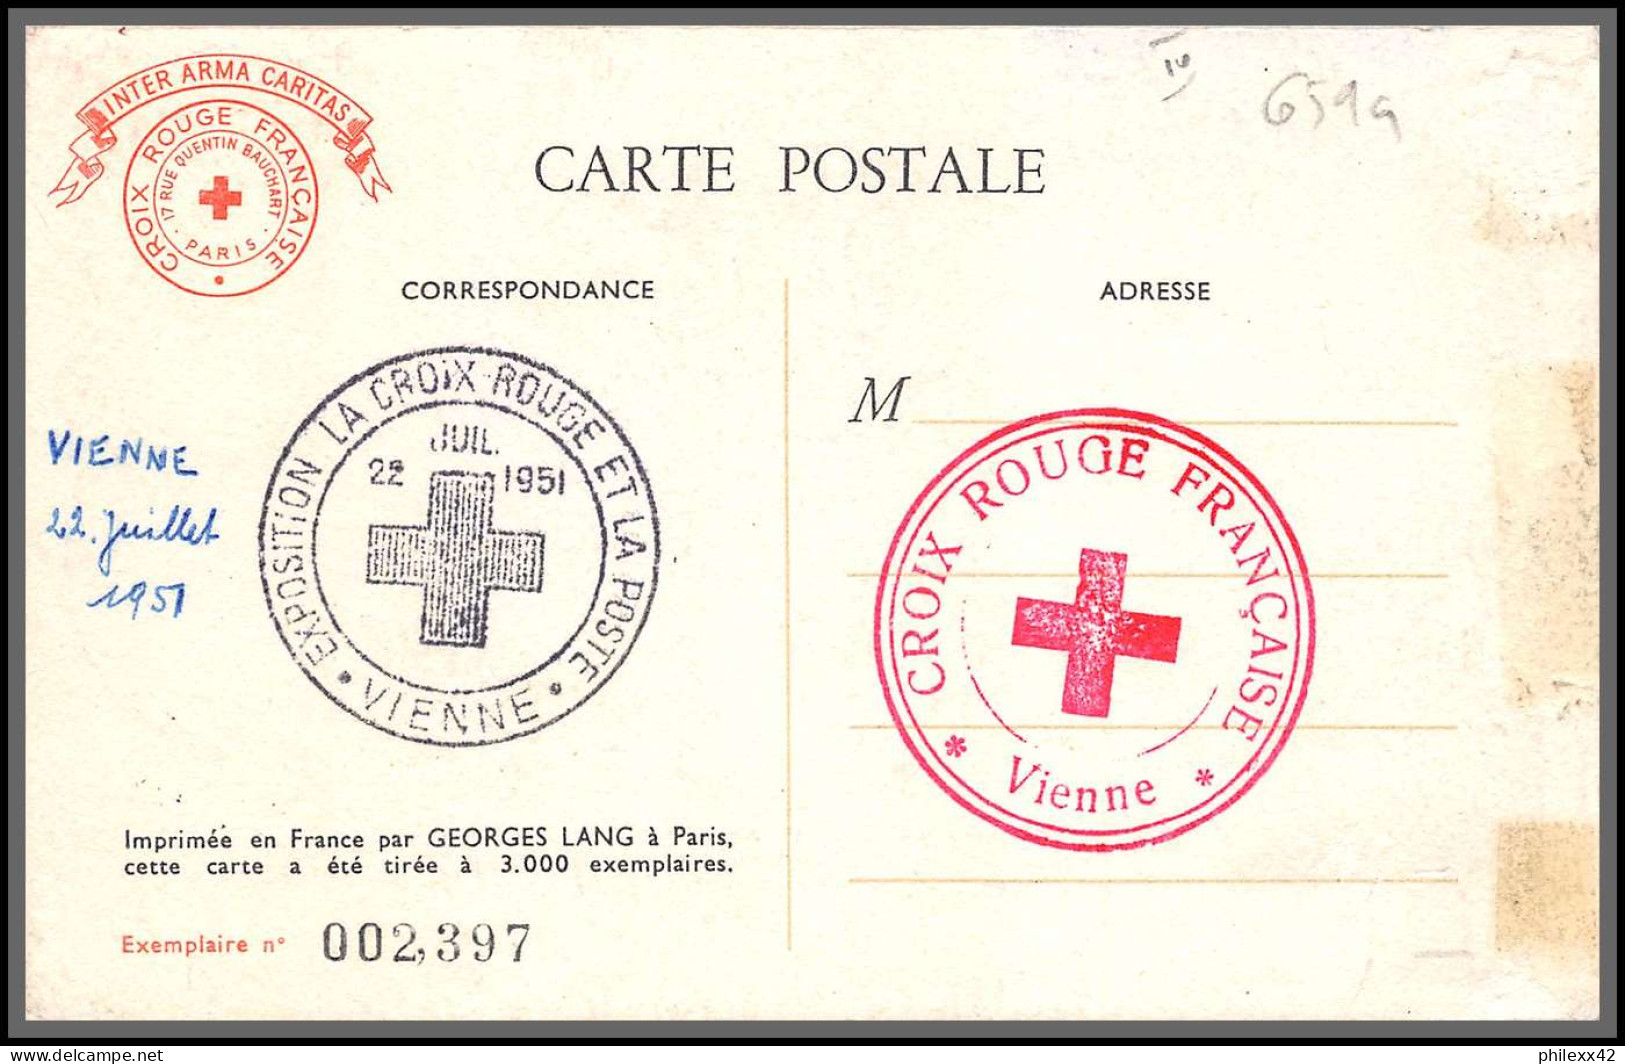 0659a/ Carte Maximum (card) France N°896 Napoléon Croix Rouge (red Cross) 23/6/1951 Vienne Autriche Austria - Napoleon